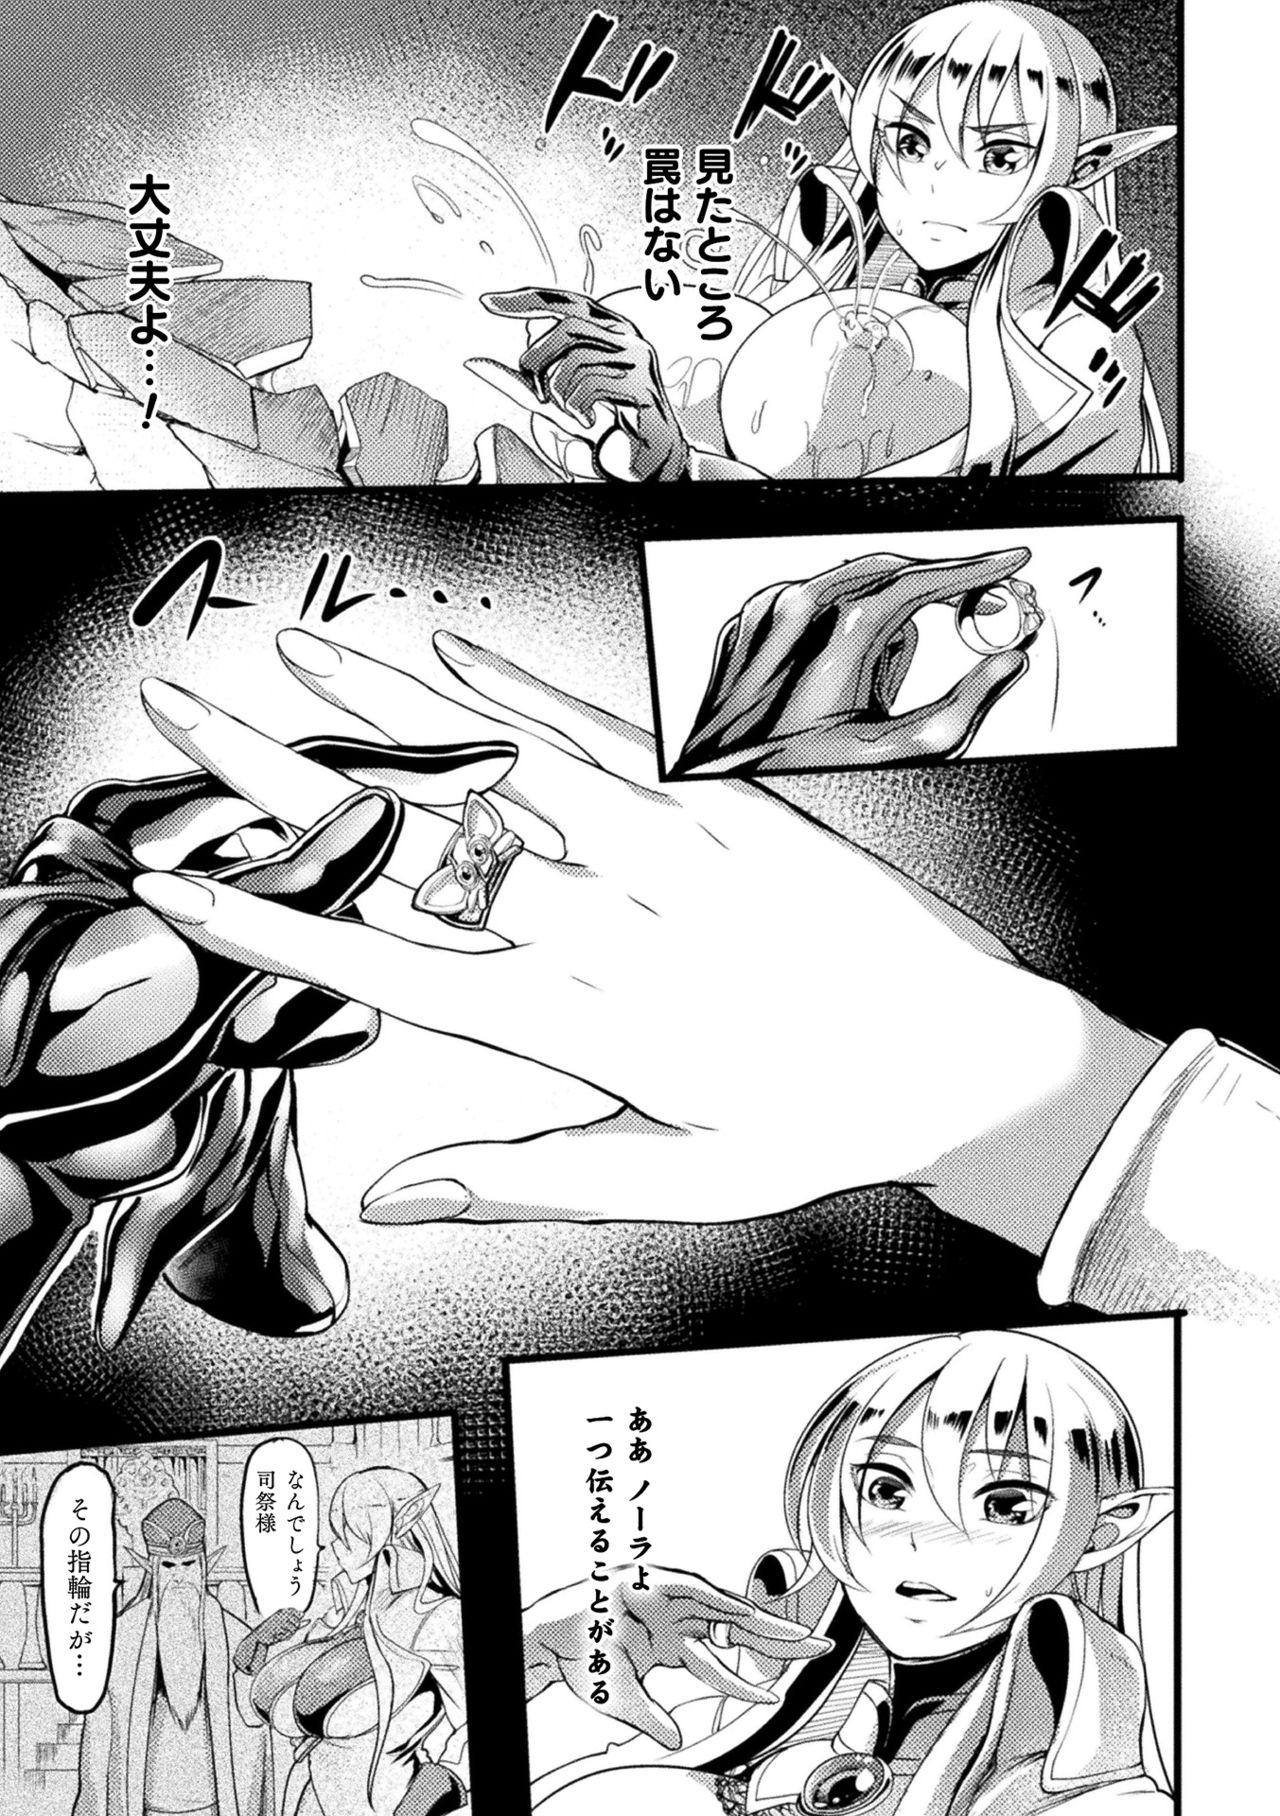 The Ero Trap Dungeon! Elf kari no Shokushuana Ep.3 Chastity - Page 11